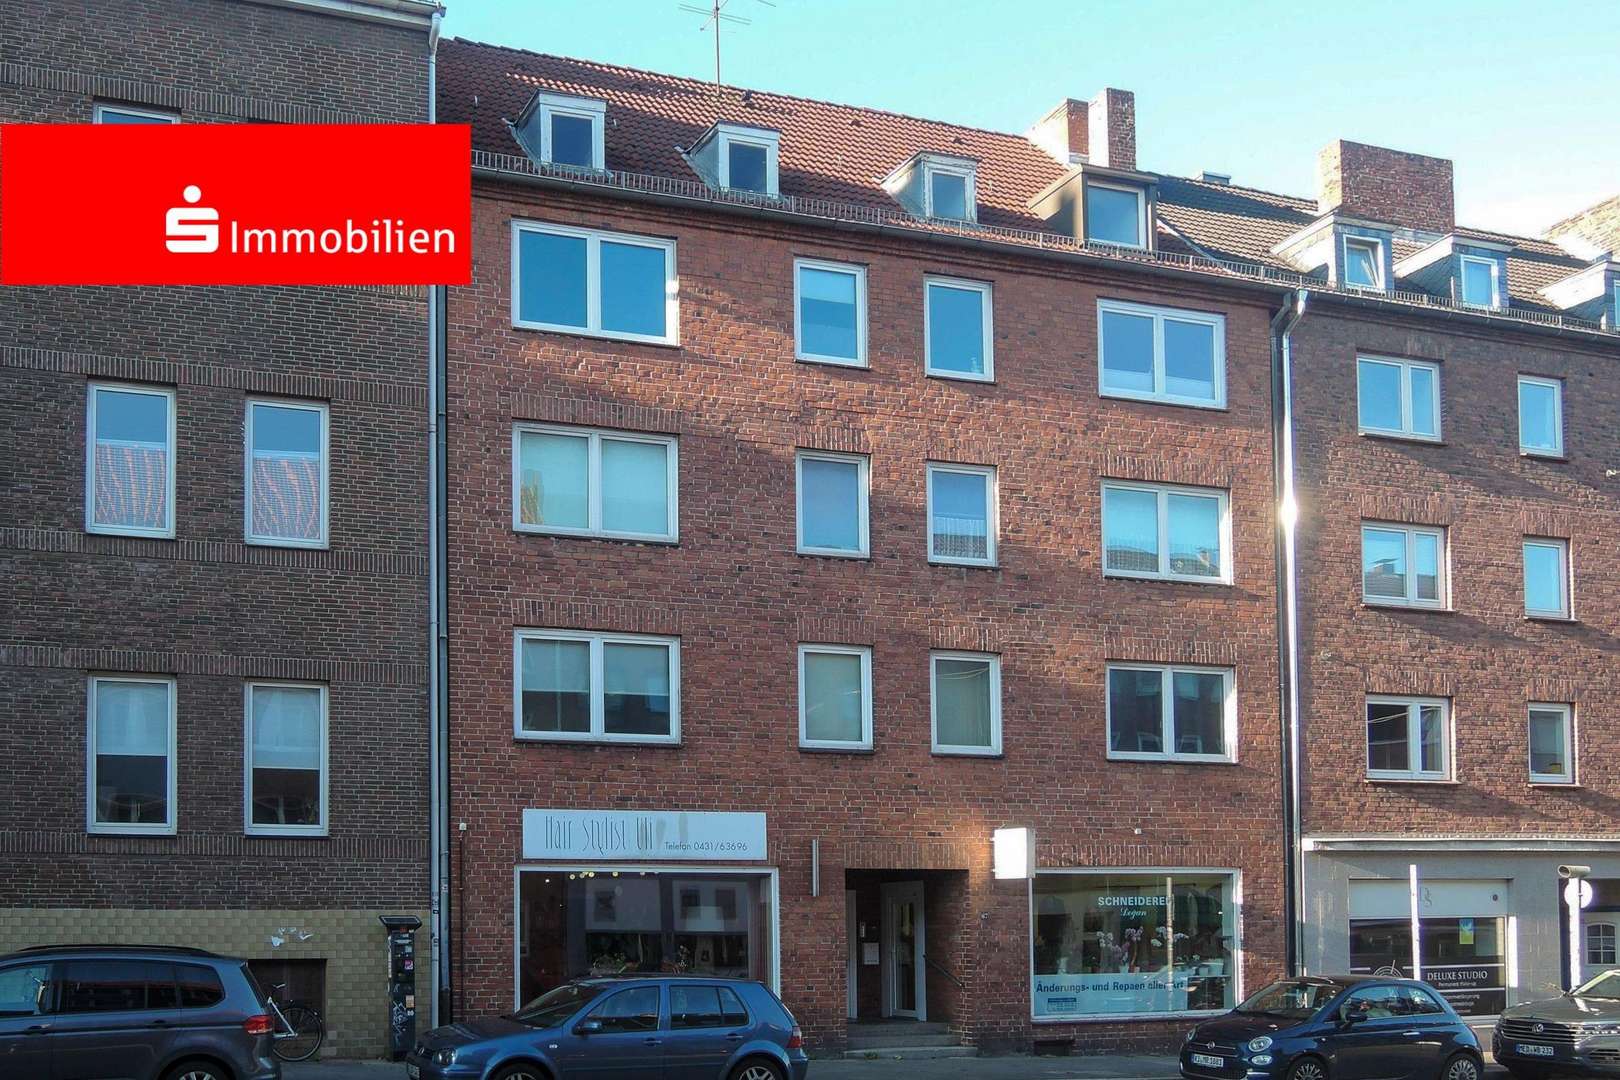 Frontfassade  - Erdgeschosswohnung in 24114 Kiel mit 53m² als Kapitalanlage günstig kaufen